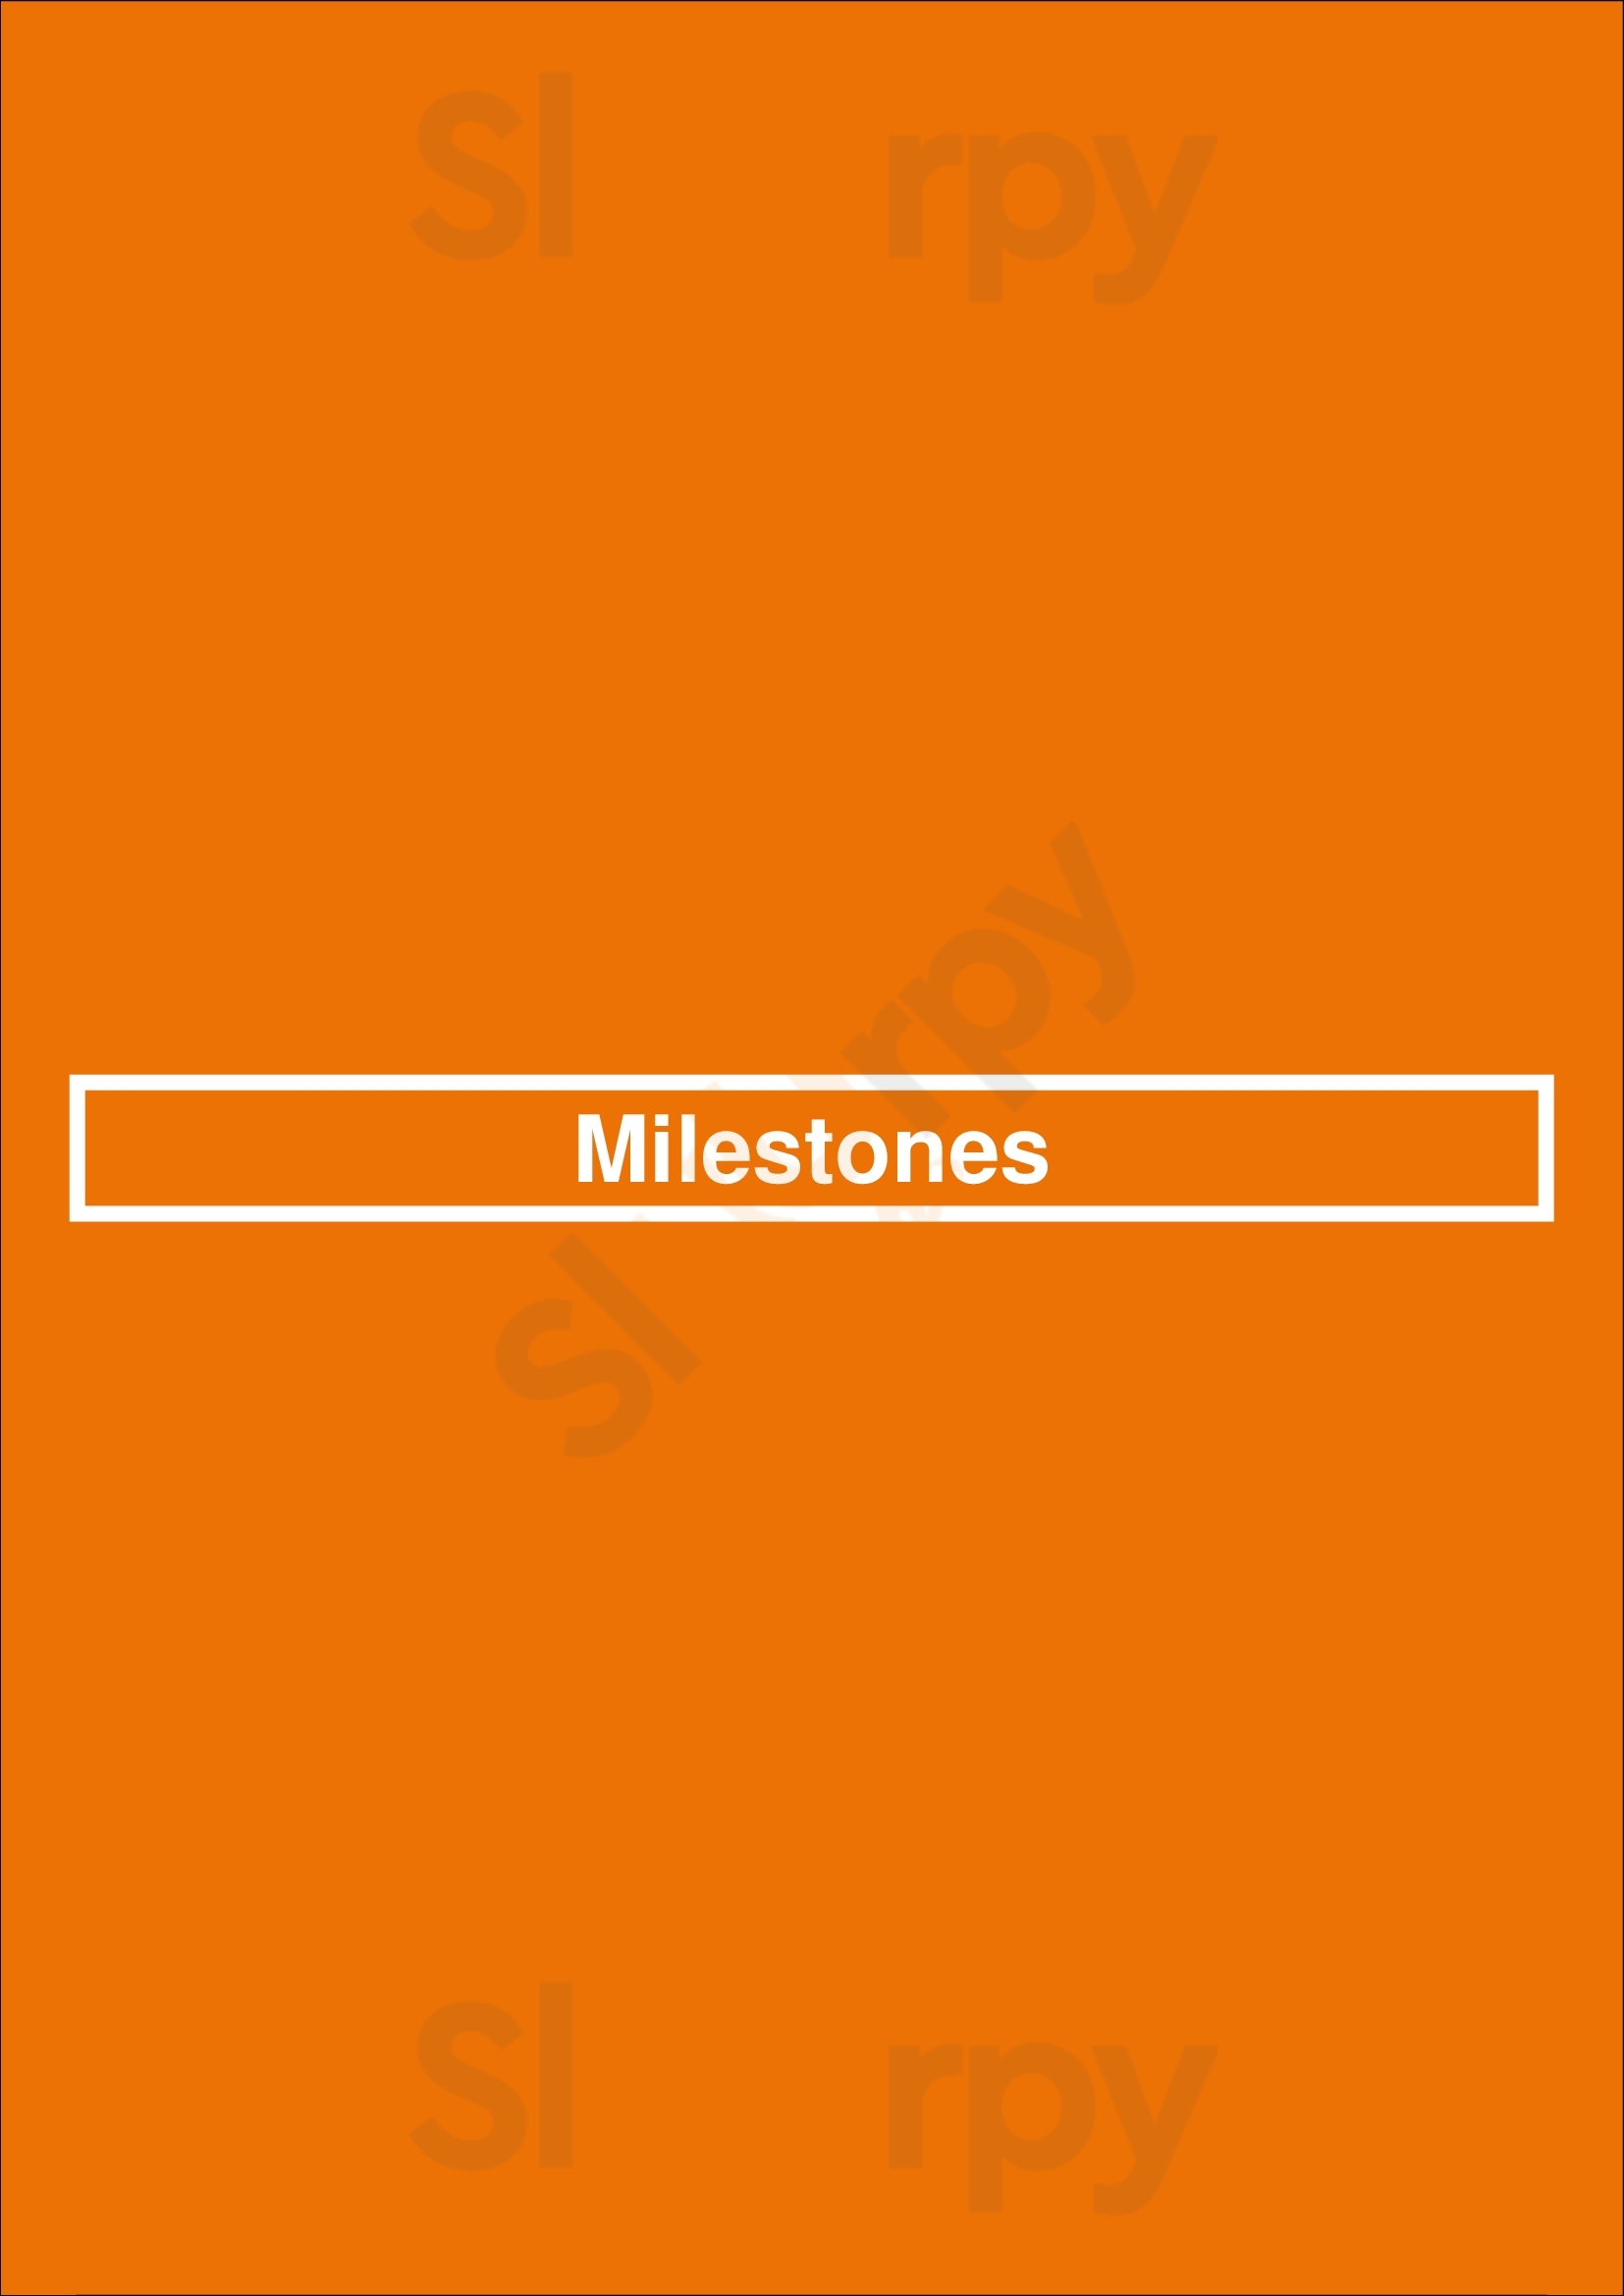 Milestones Coquitlam Menu - 1